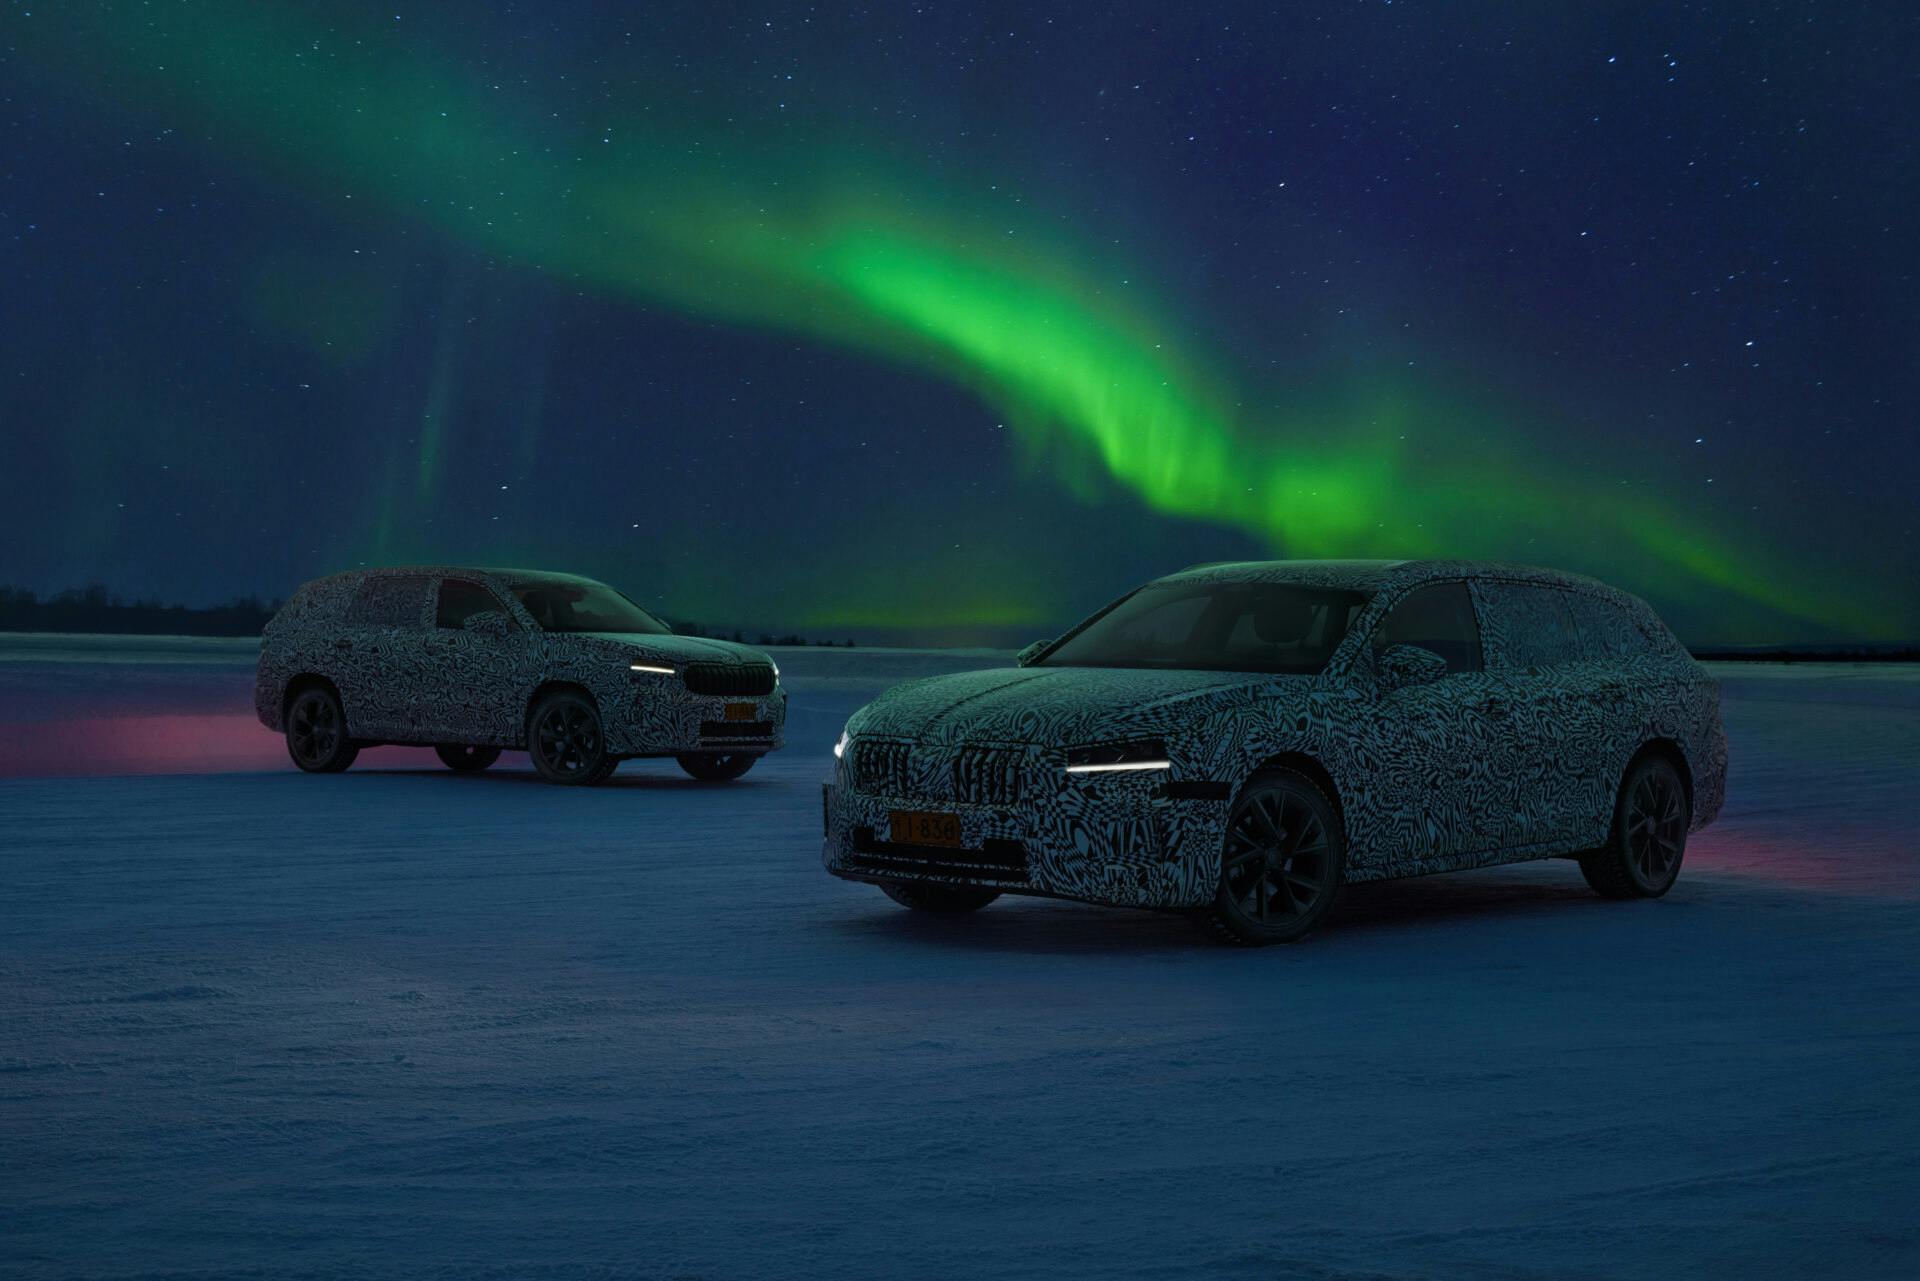 Počas testovania v extrémnych mrazivých podmienkach za polárnym kruhom bolo preverené správne fungovanie všetkých svetiel nových vozidiel Škoda Superb a Kodiaq.